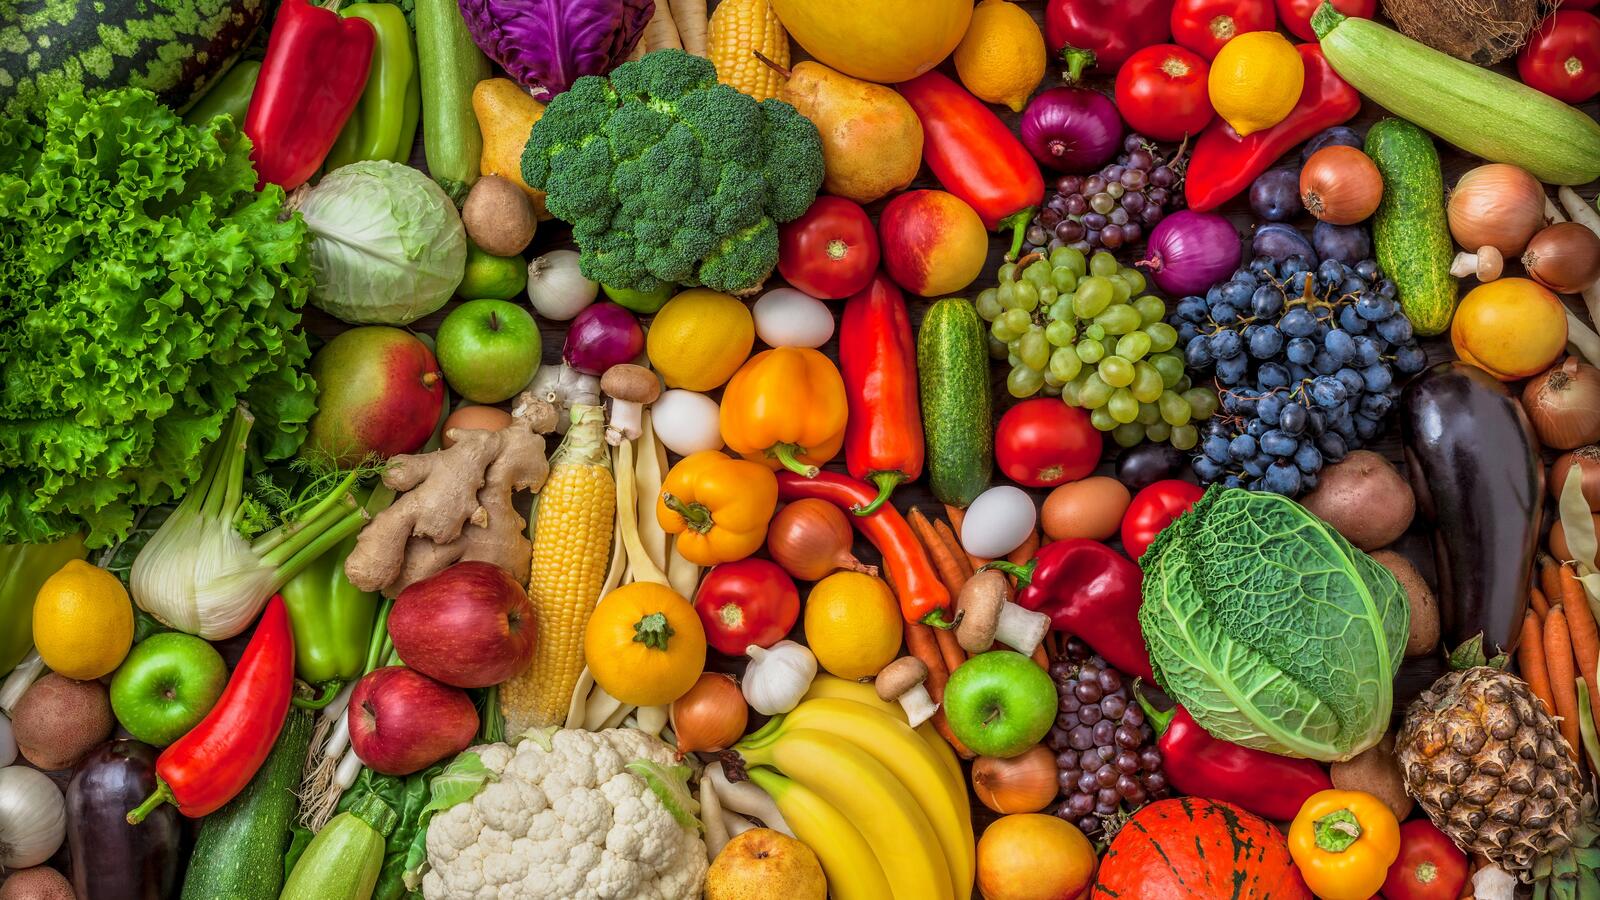 Бесплатное фото Картинка с фруктами и овощами